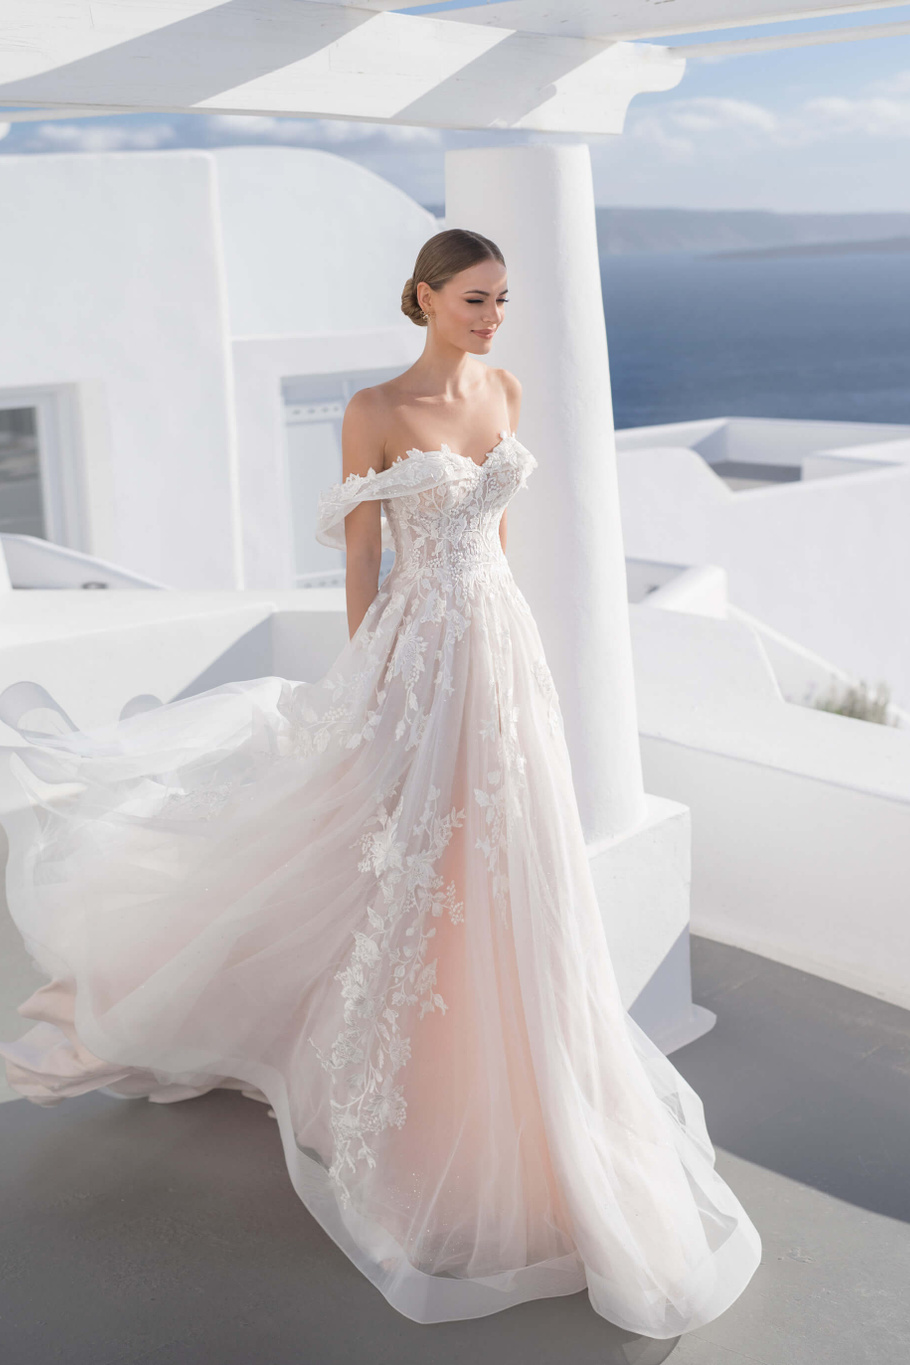 Свадебное платье «21008» Луссано Брайдал — купить в Краснодаре из коллекции 2021 Бланни